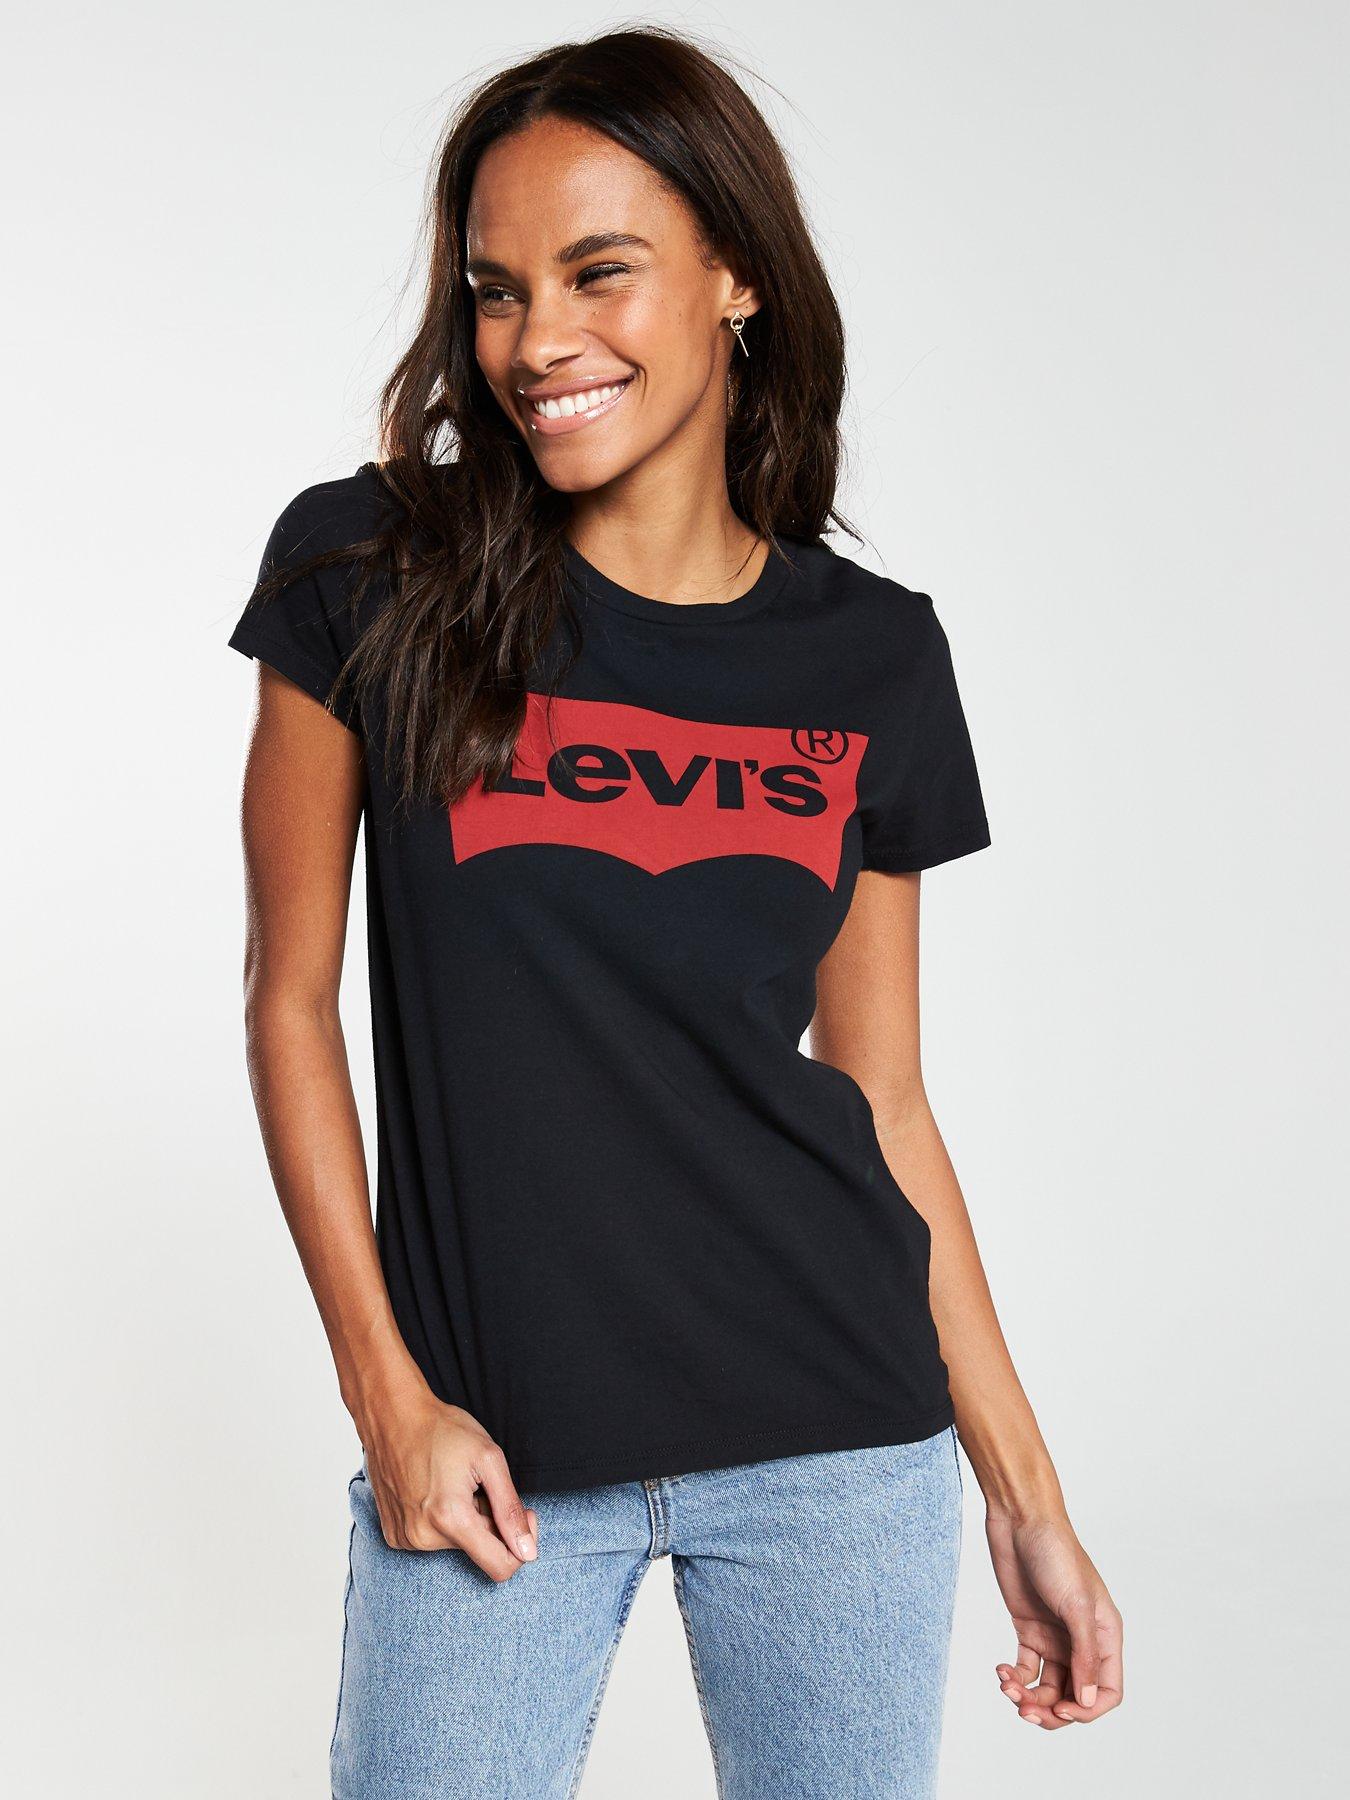 black levi's t shirt women's